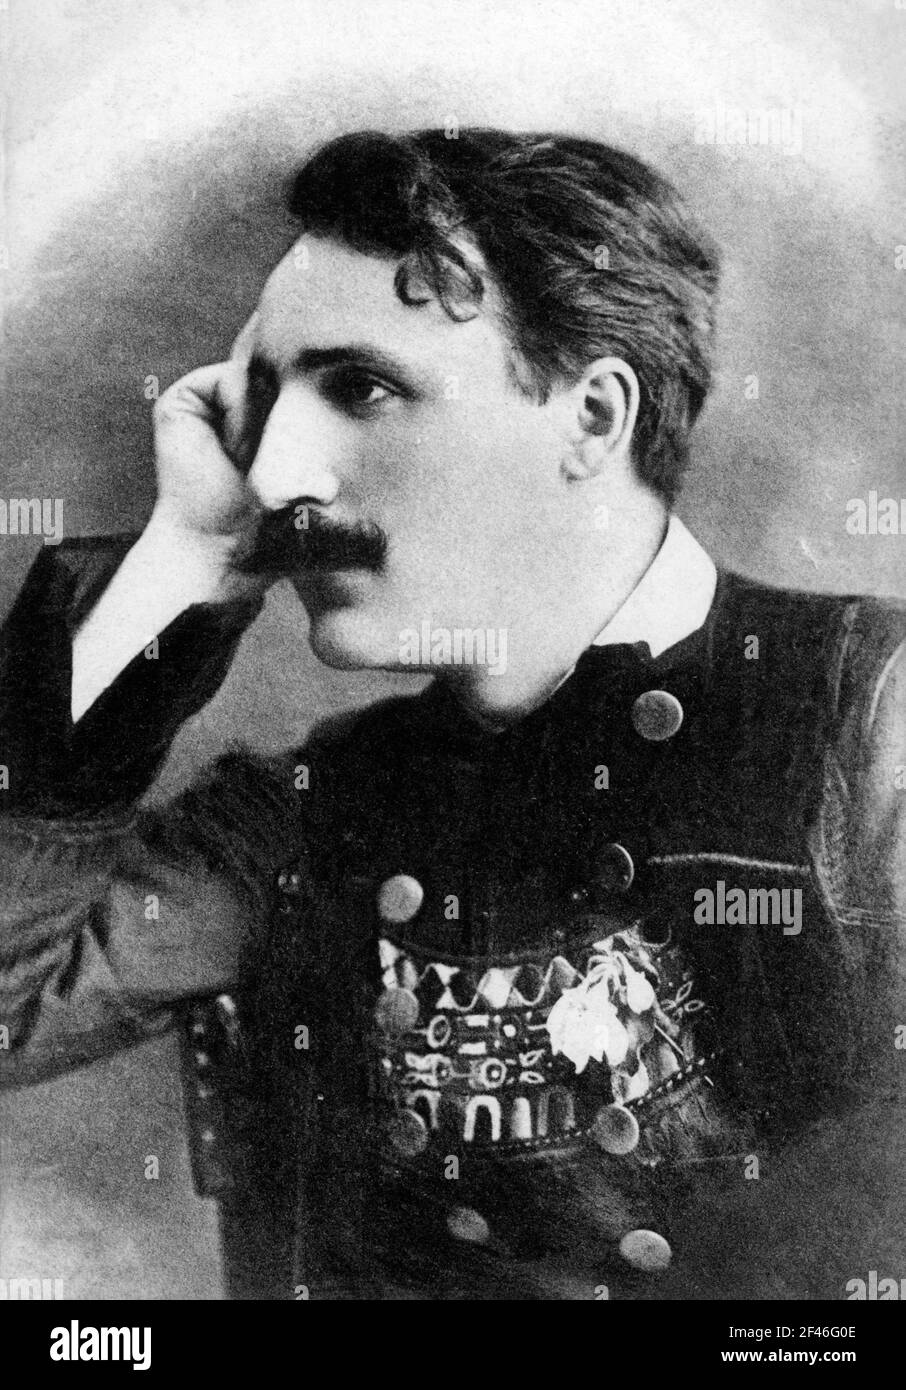 Jean-Baptiste-Théodore-Marie Botrel (1868-1925) más conocido como Theodore Botrel, poeta y cantautor bretón. Stock Photo